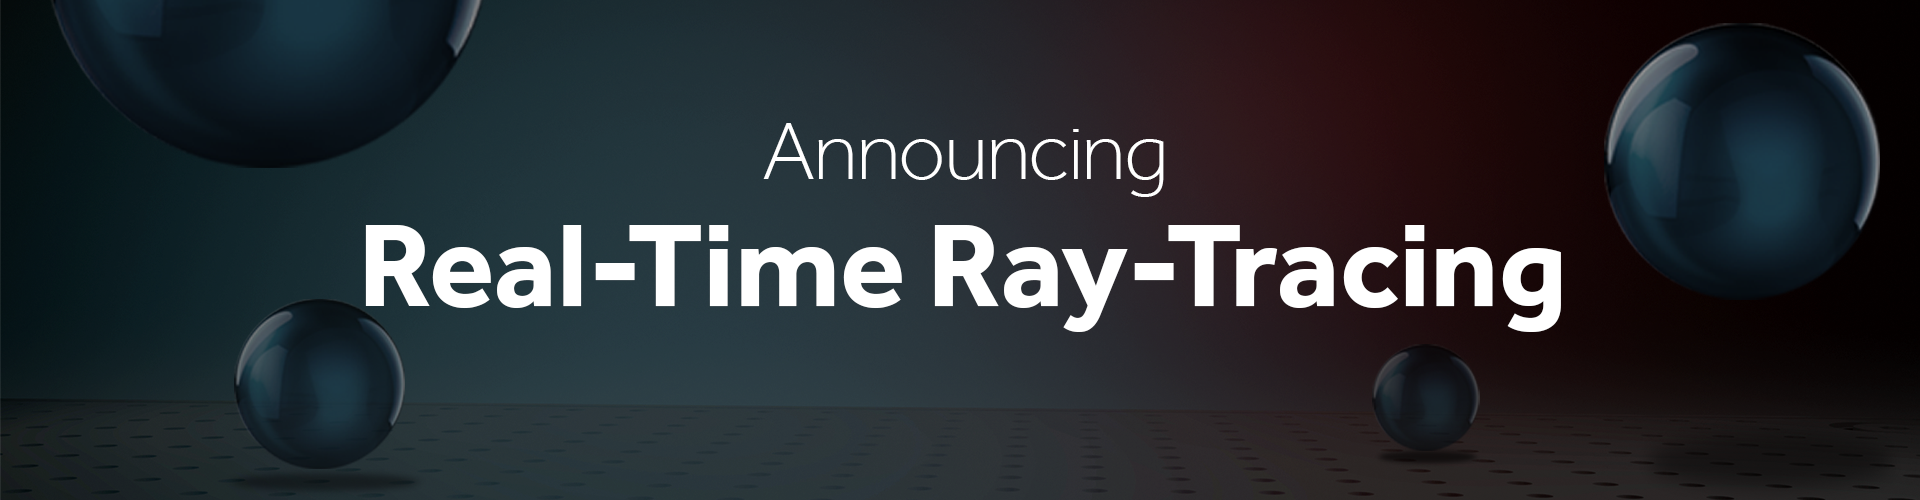 AMD stawia na wybiórcze wykorzystywanie techniki Ray Tracing - AMD również wdraża wsparcie dla technologii raytracingu - wiadomość - 2018-03-21